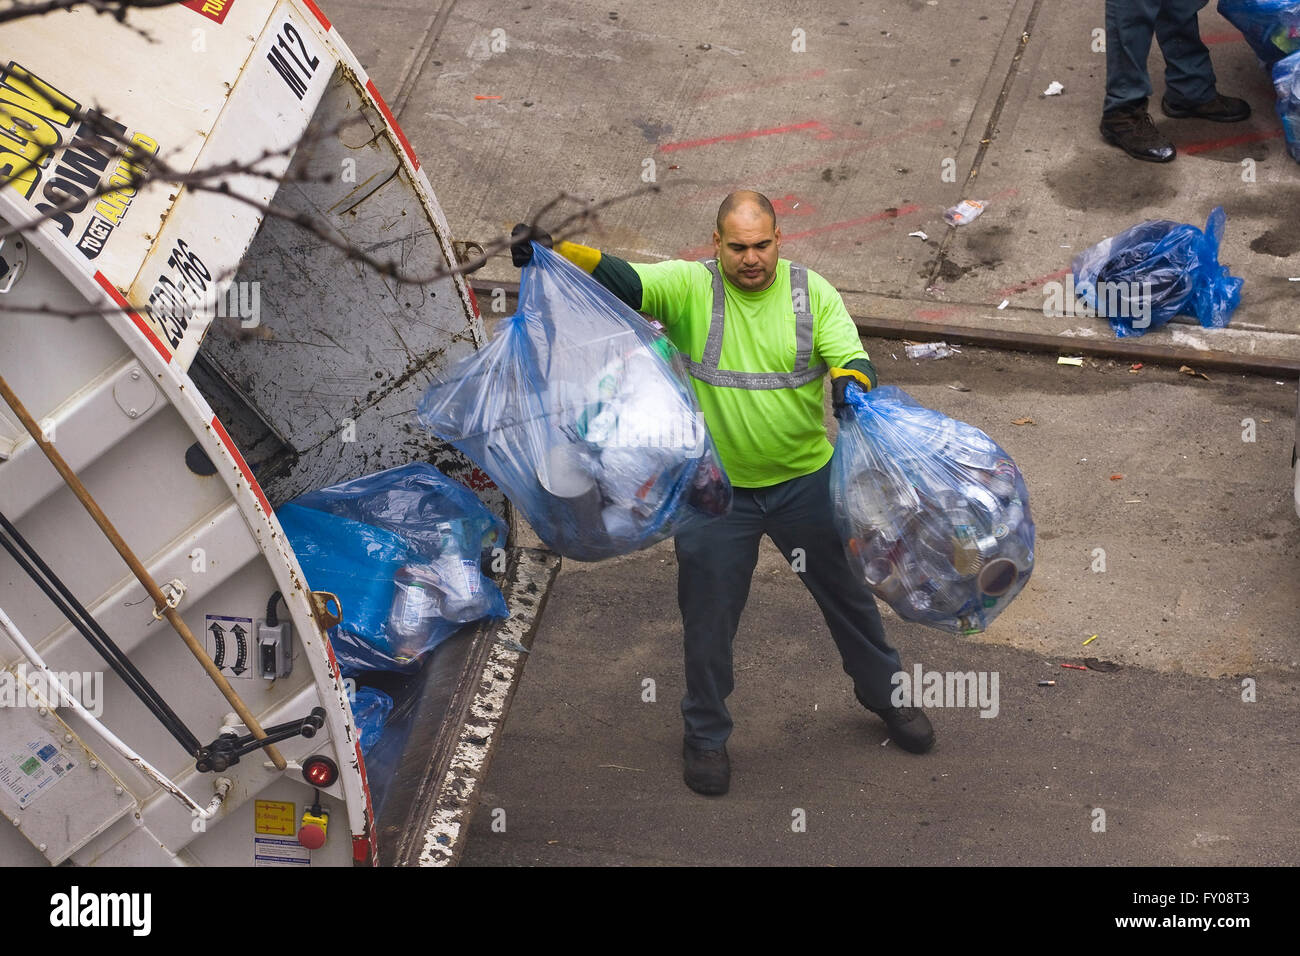 Ein Hygiene-Arbeiter in New York City blau farbigen Müllbeutel werfen voller Wertstoffe in den hinteren Teil ein Müllwagen Stockfoto